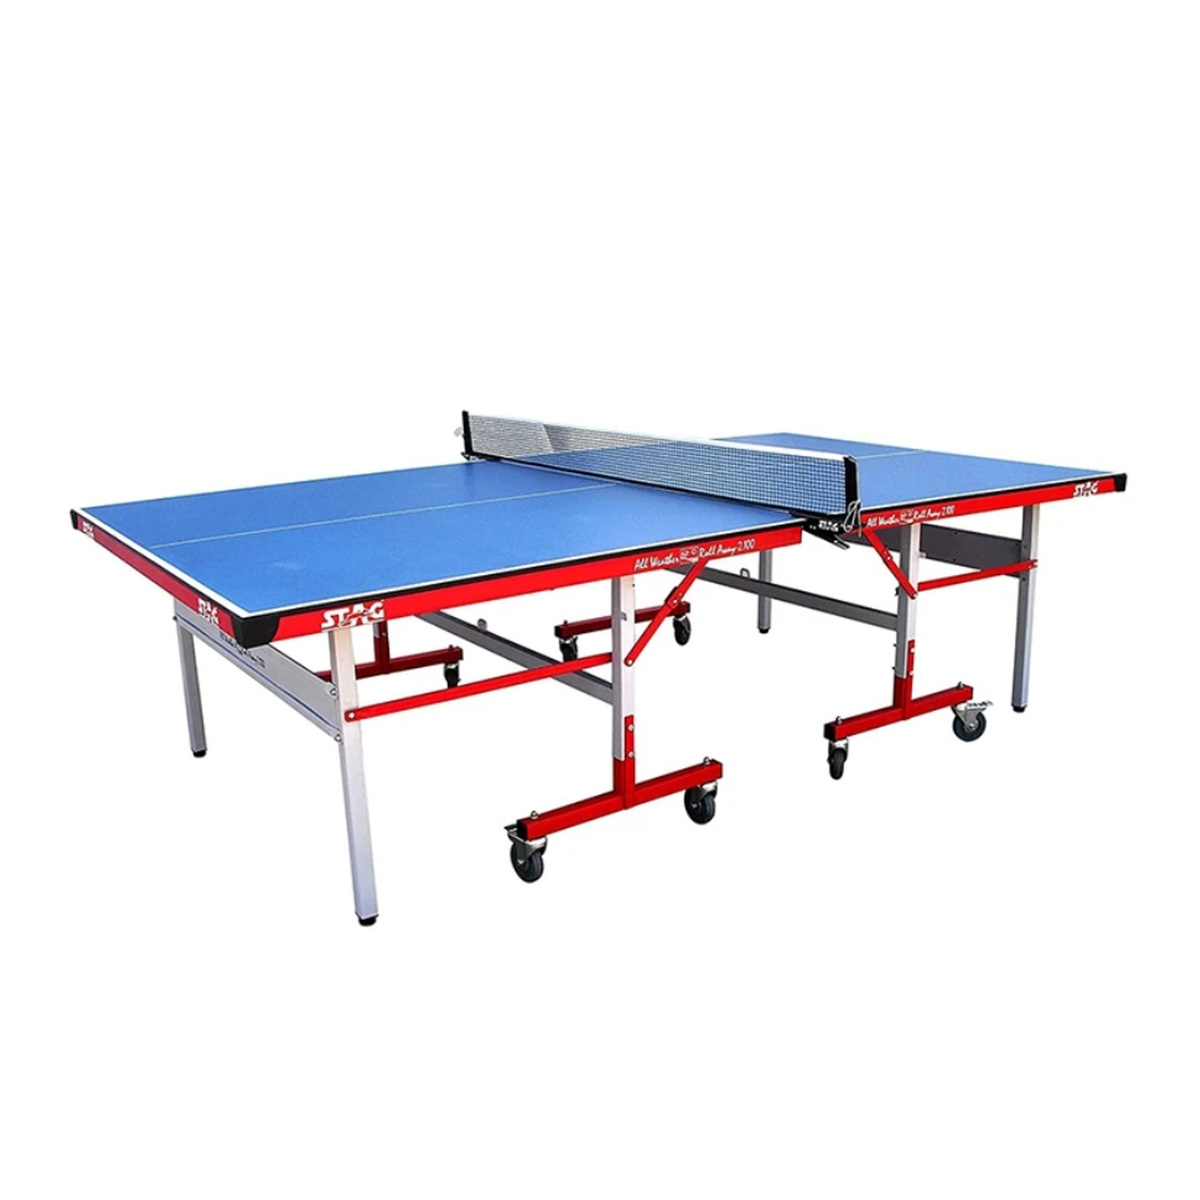 ستاج طاولة تنس طاولة قابلة للطي للأماكن الخارجية مع سطح مدمج، 12 ملم، أزرق/أحمر، TTOU-40